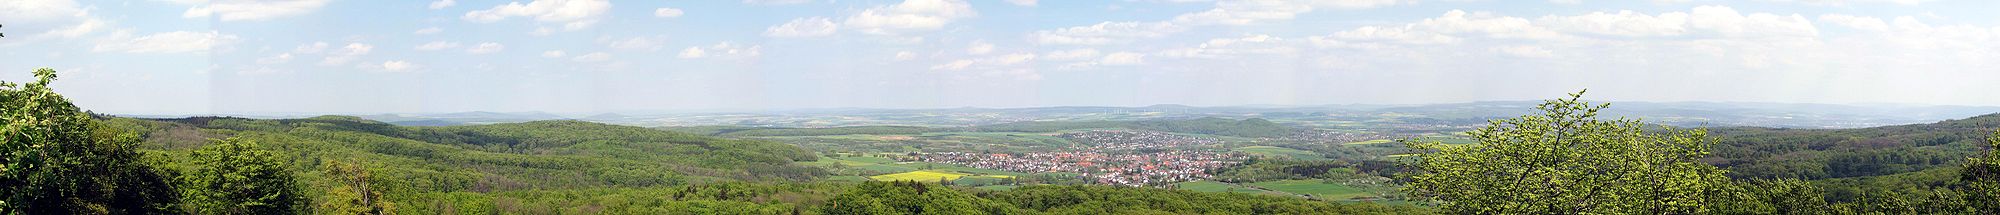 April 2009: Nordostblick vom Hohlestein. In der Bildmitte ist die Gemeinde Ahnatal zu erkennen. Am Horizont dahinter liegt der Reinhardswald